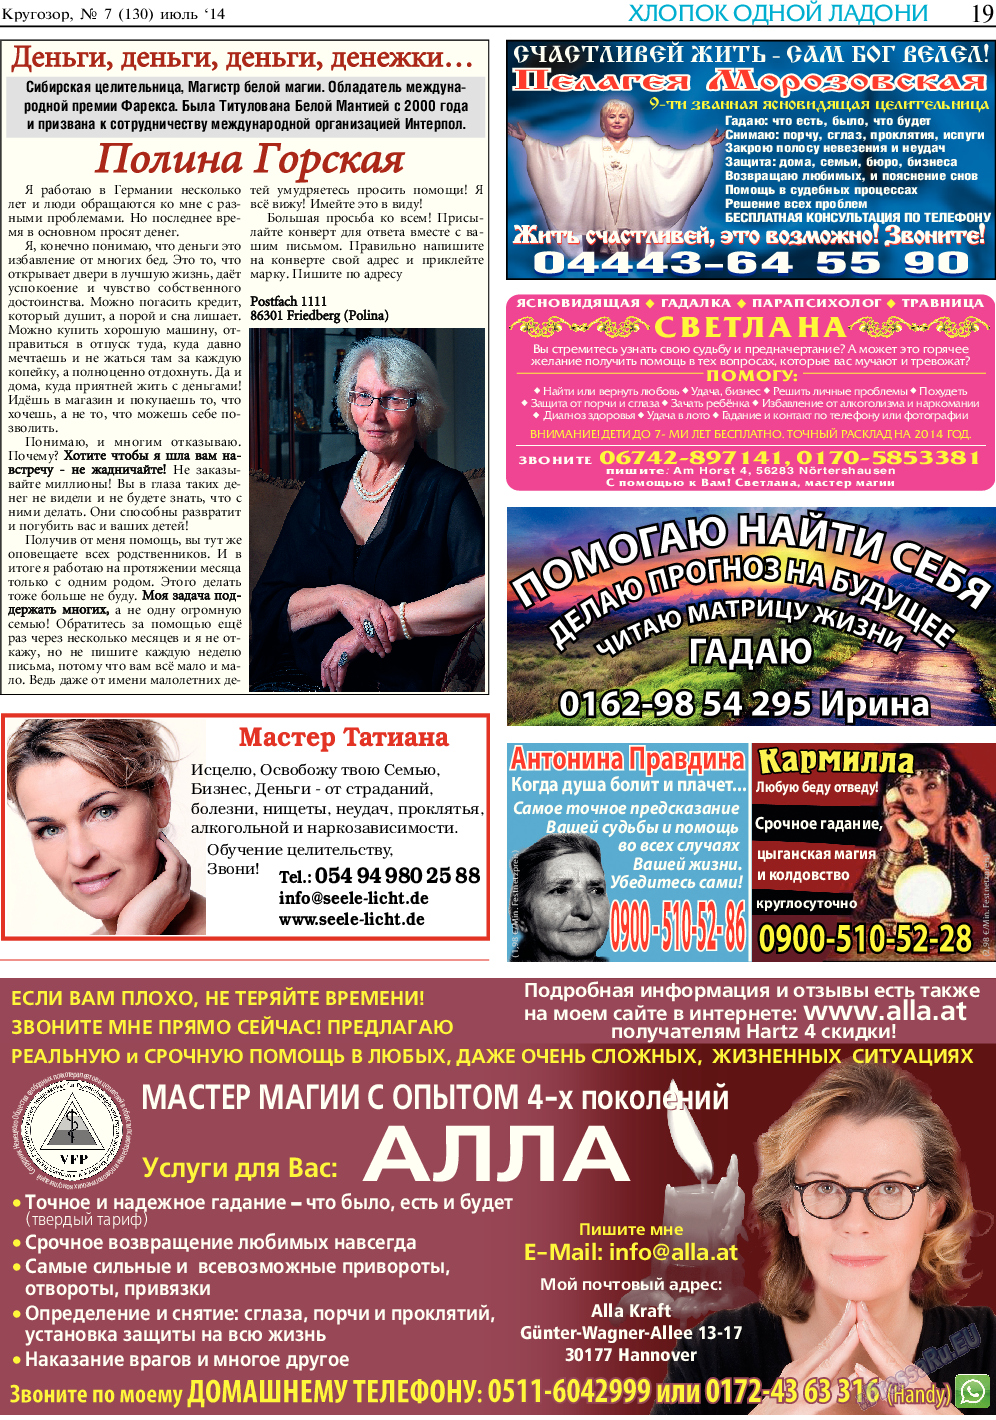 Кругозор (газета). 2014 год, номер 7, стр. 19